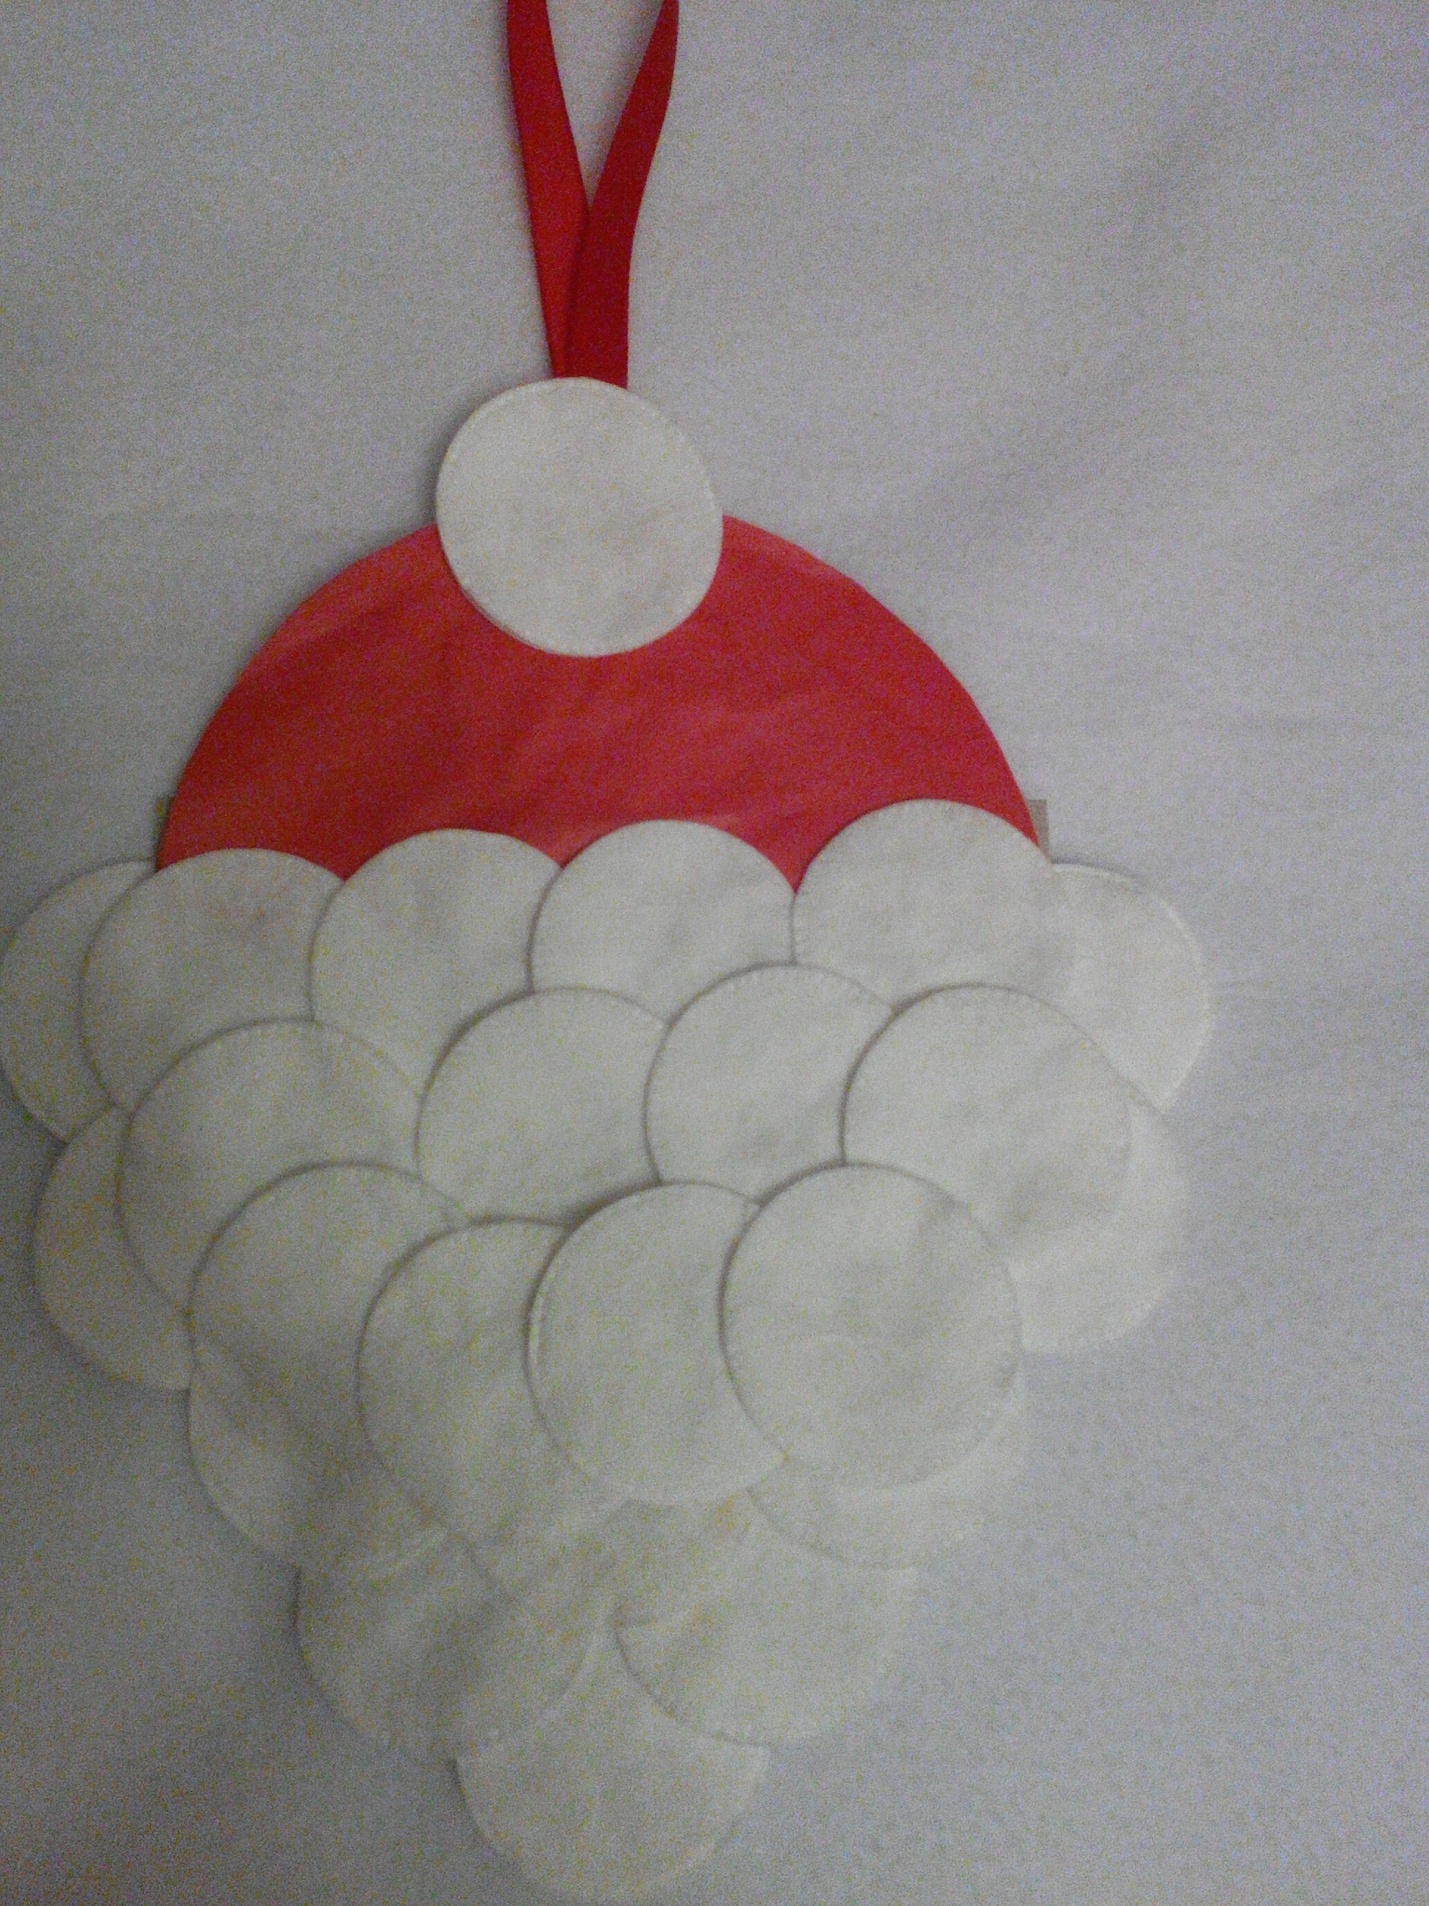 سانتا كلوز من الفوط القطنية تصنع مع طفل